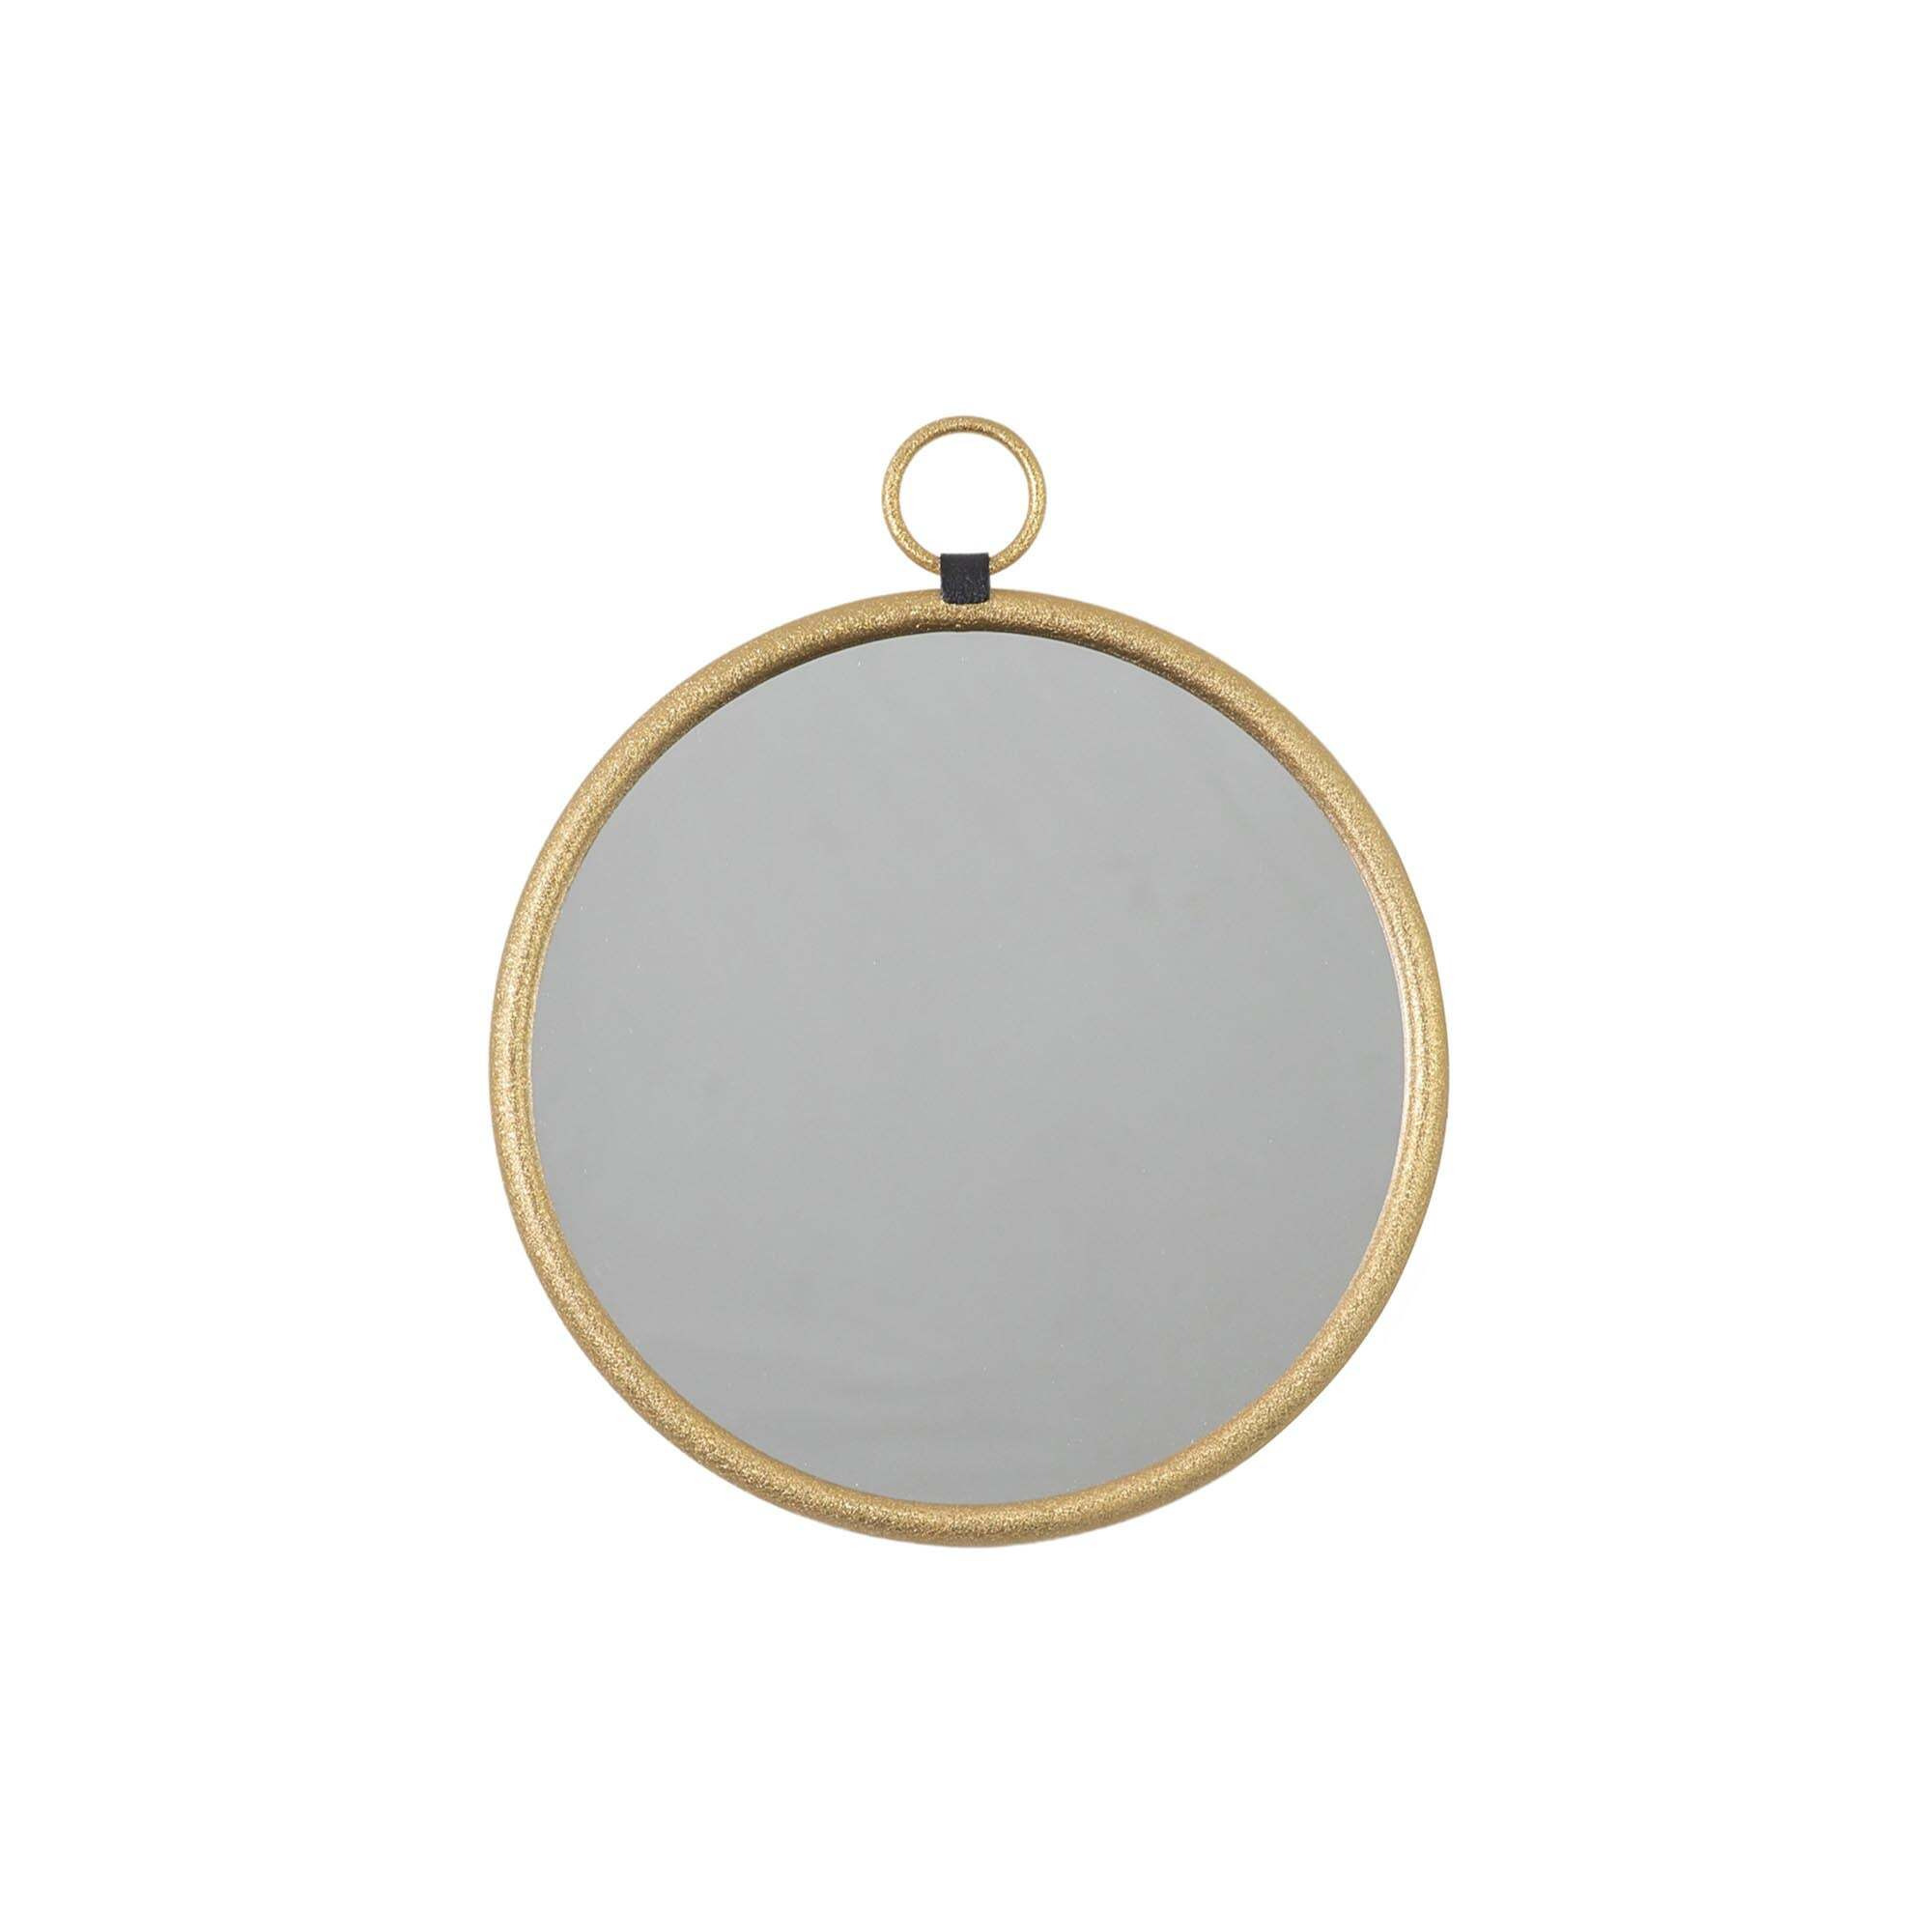 Orient Round Wall Mirror, 40x45cm Gold